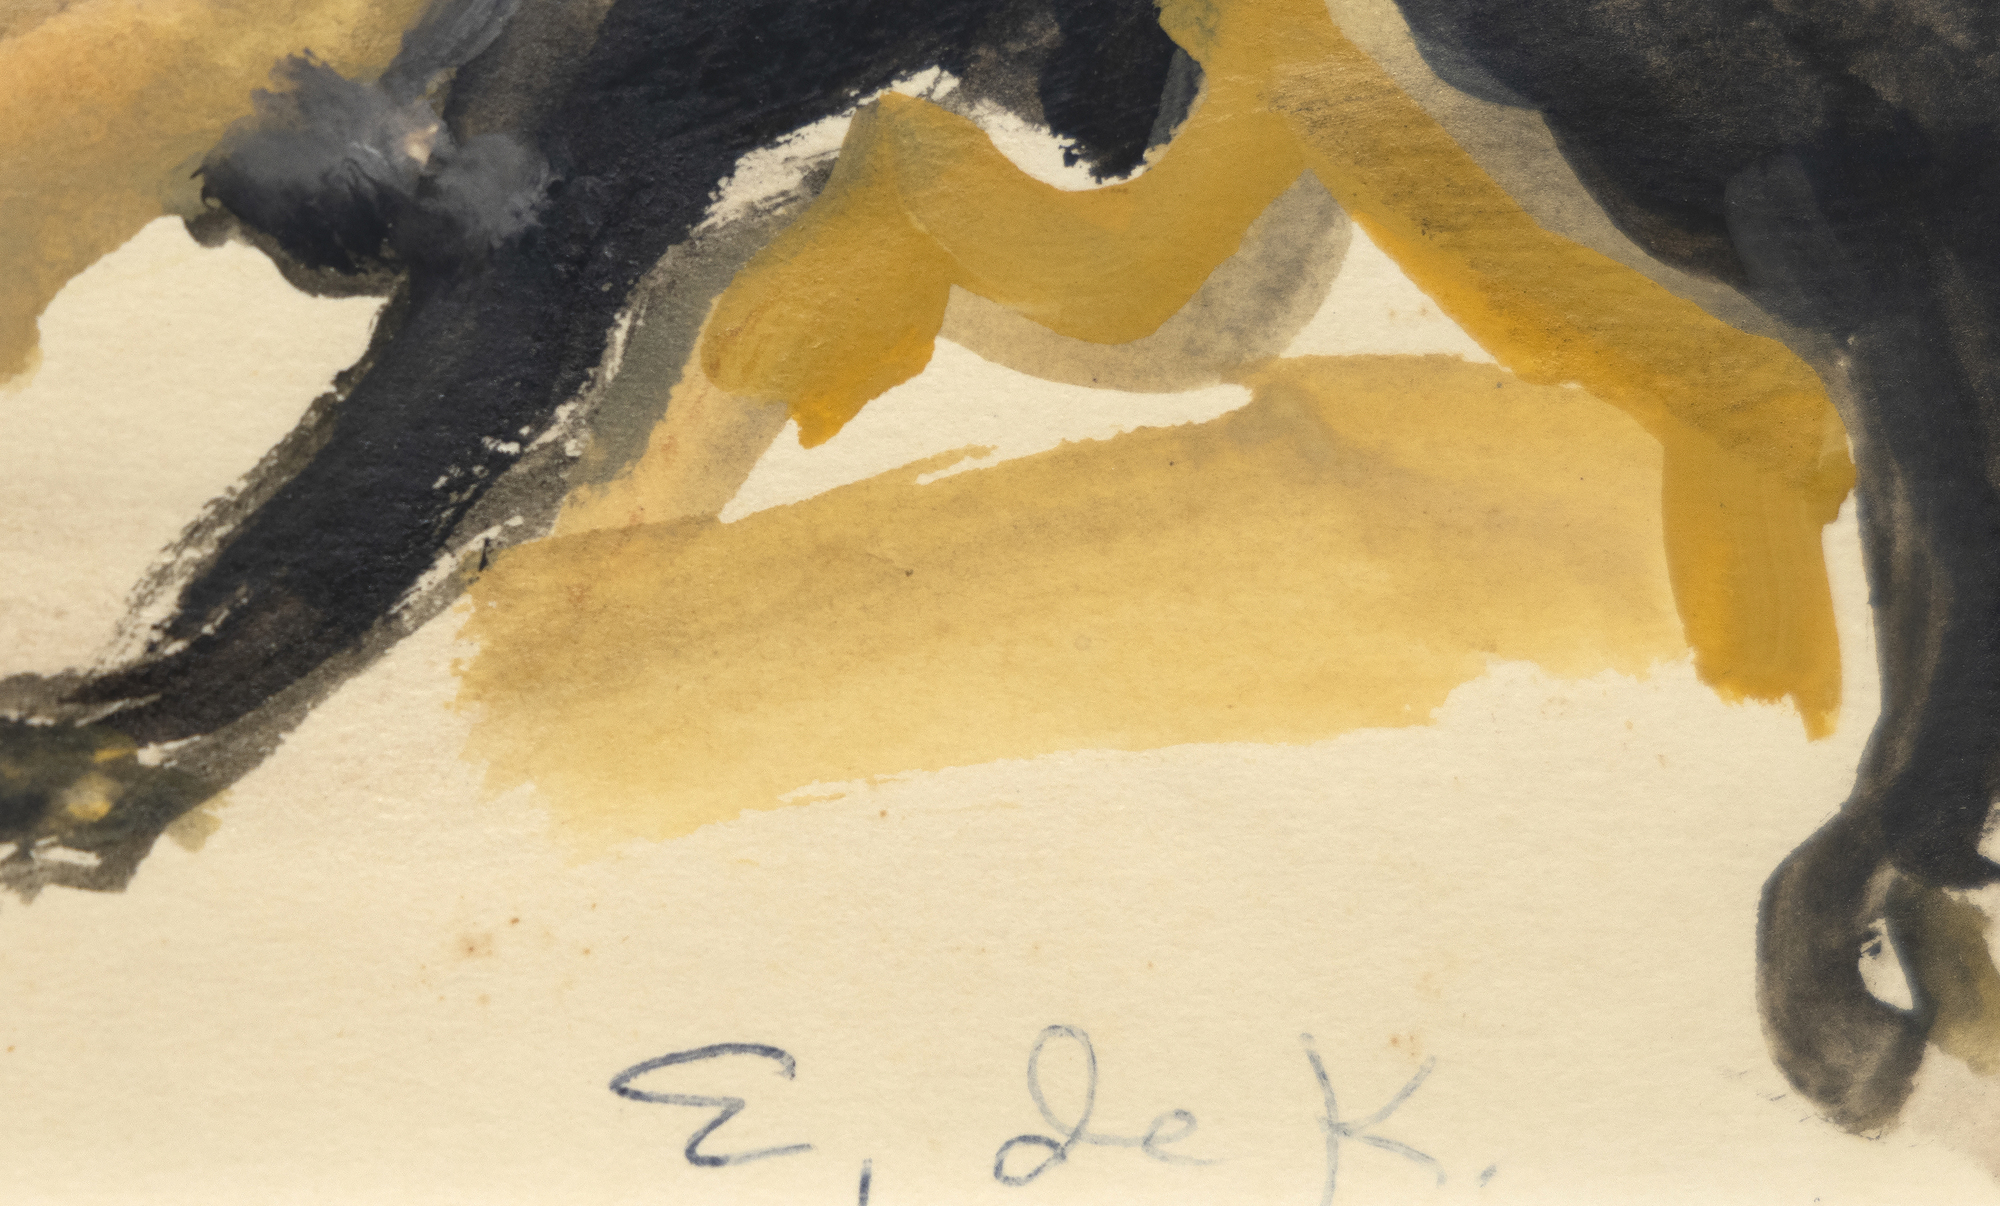 ELAINE DE KOONING - The Matador - gouache on paper - 7 3/4 x 9 1/2 in.